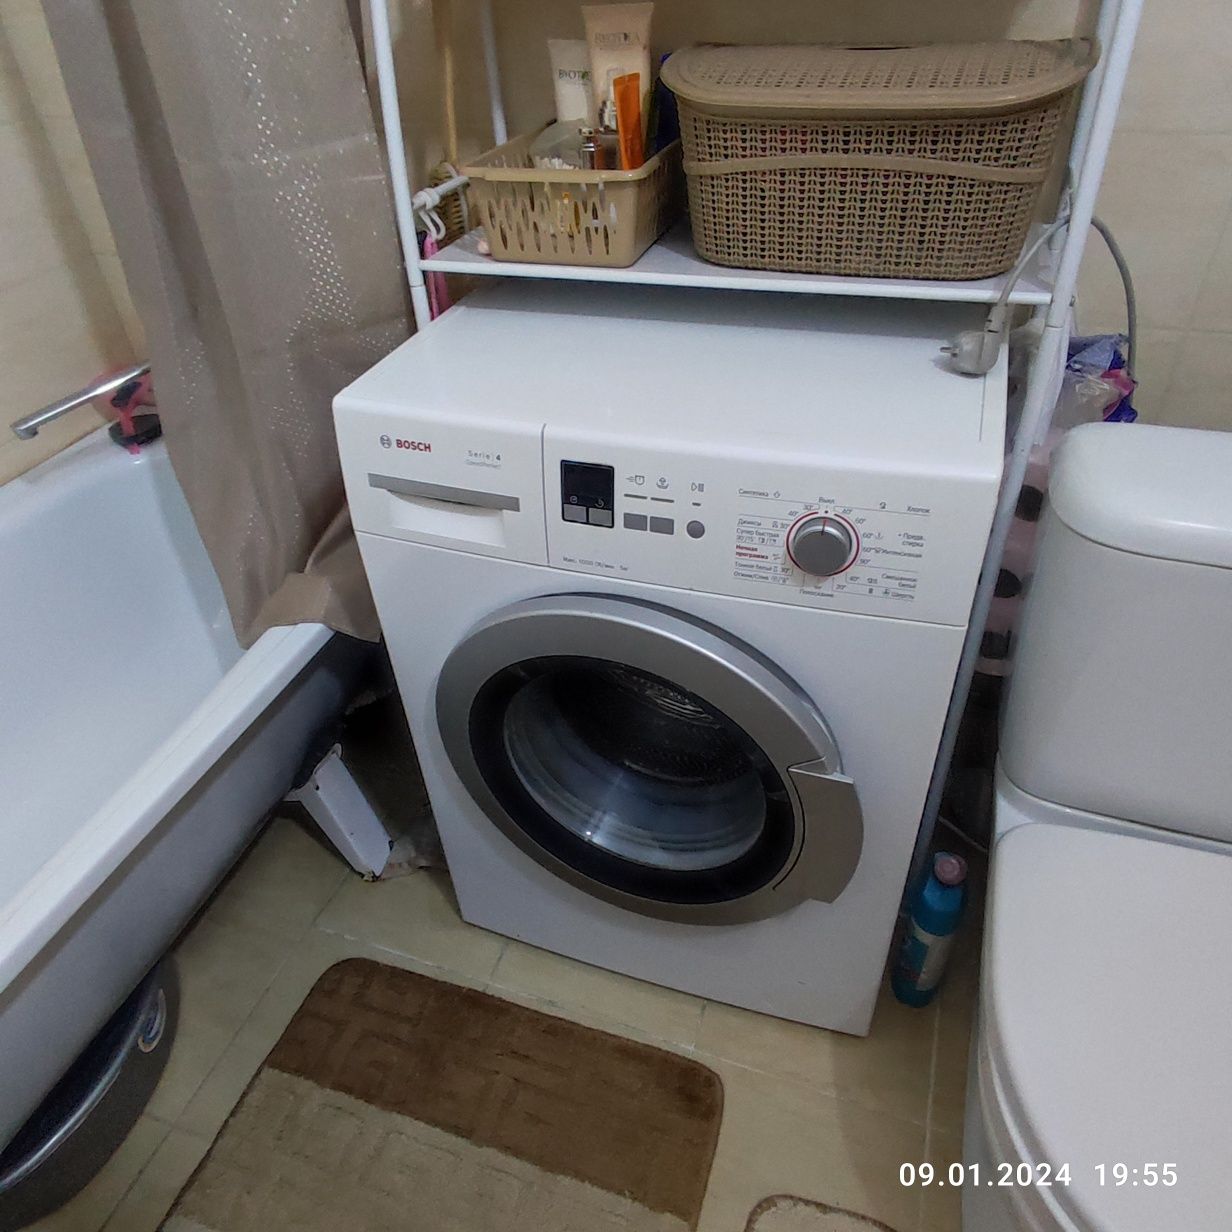 Срочно продам в Алматы стиральную машину